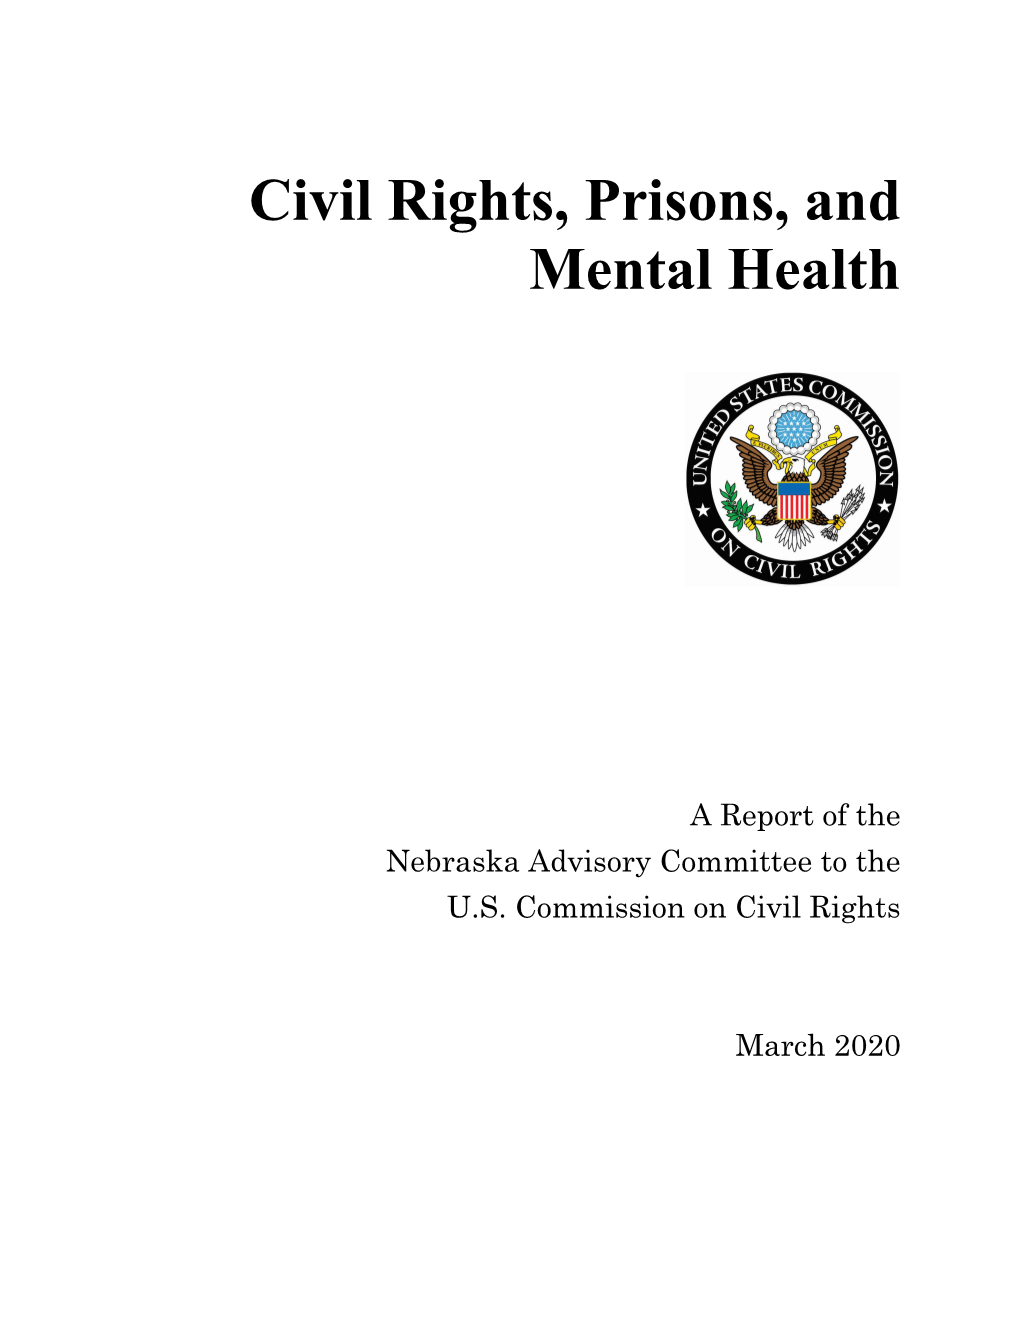 Civil Rights, Prisons and Mental Health in Nebraska